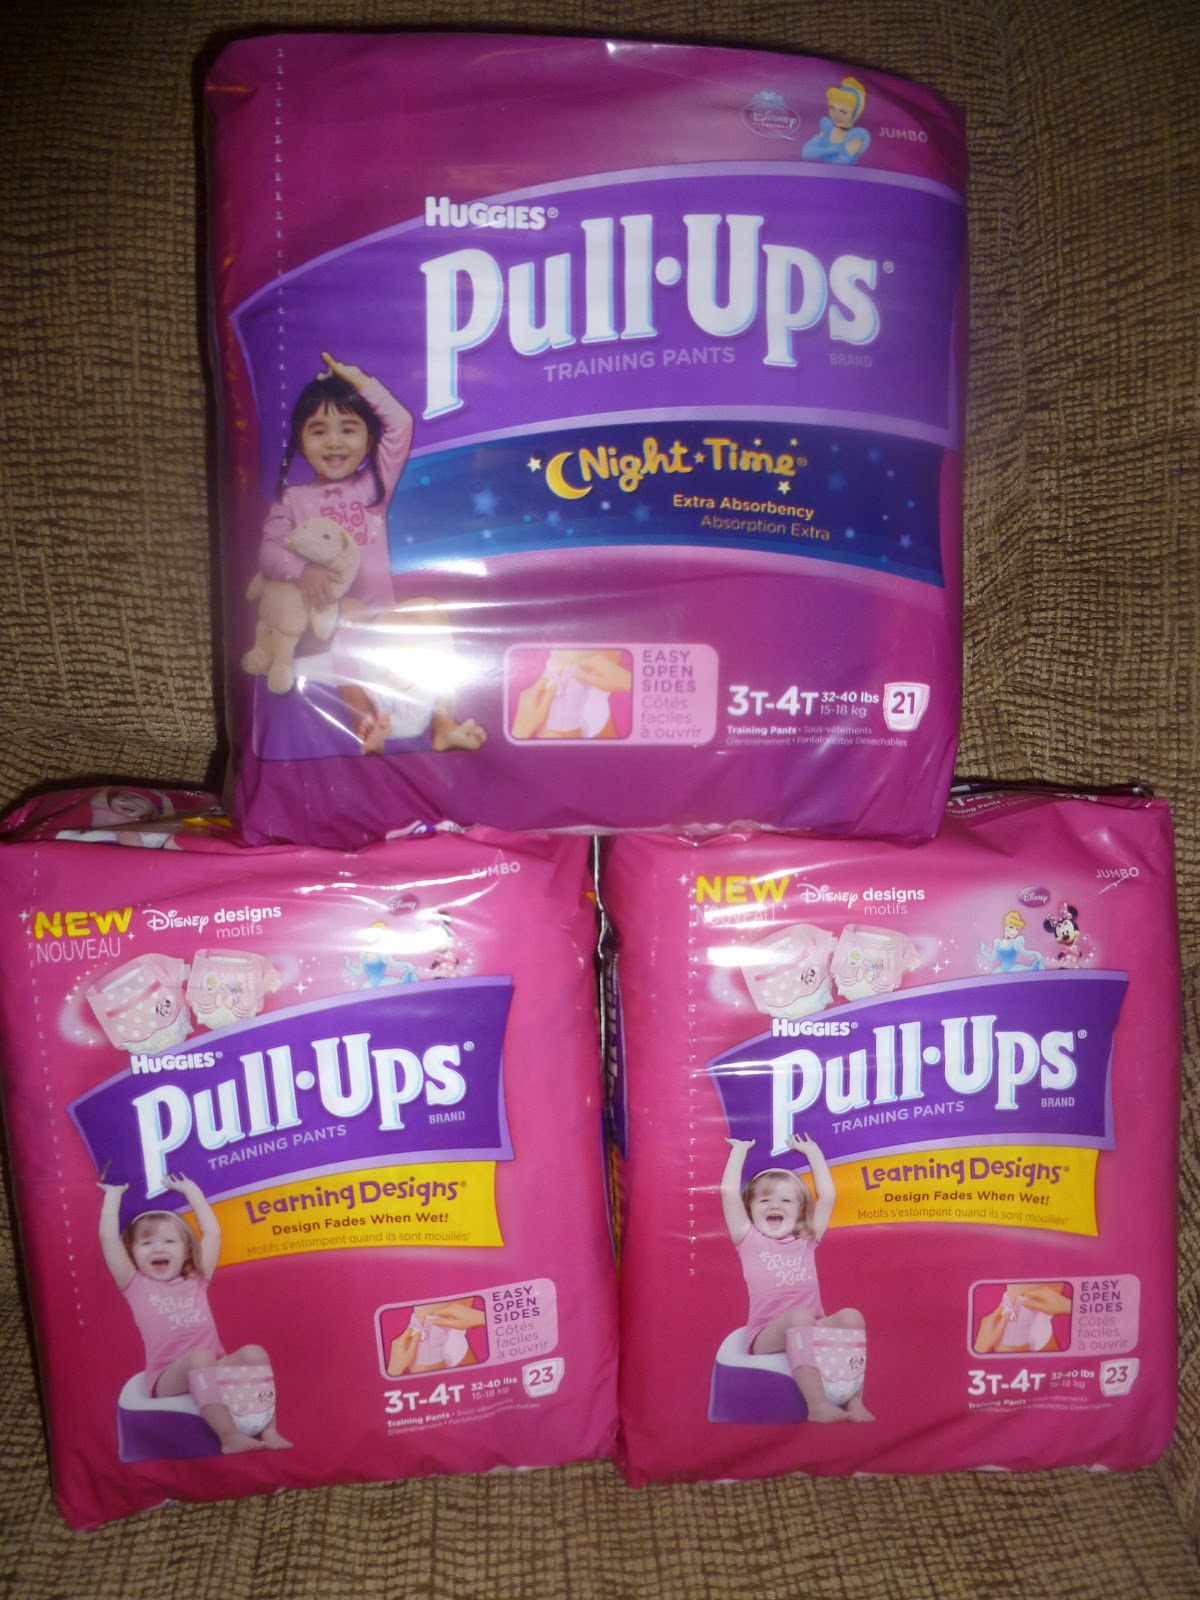 Girls in Diaper-Pull-Ups 3, 29 @iMGSRC.RU